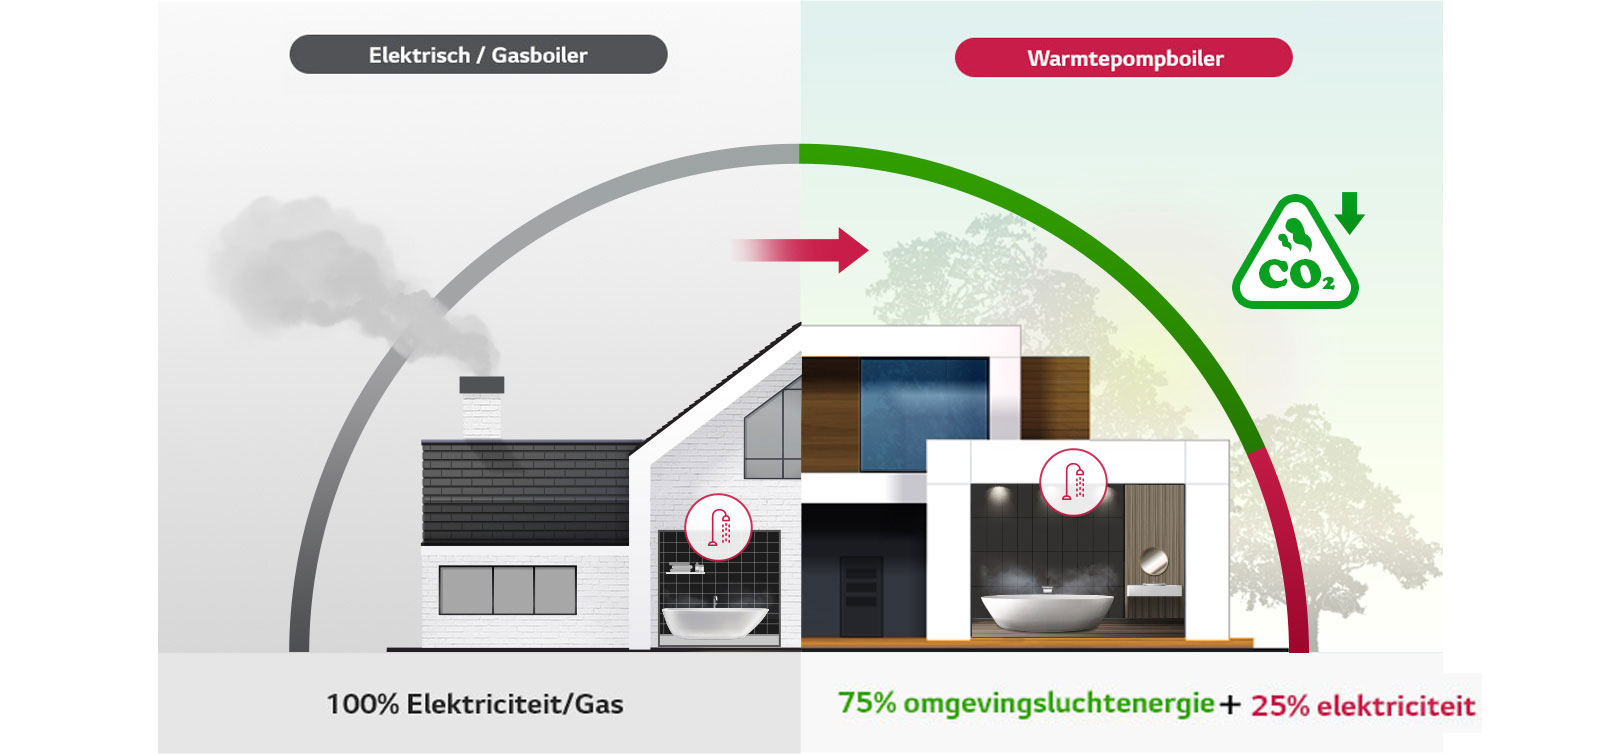 "Elektrisch / GAS boiler en warmtepompboiler Vergelijkingsbeeld"